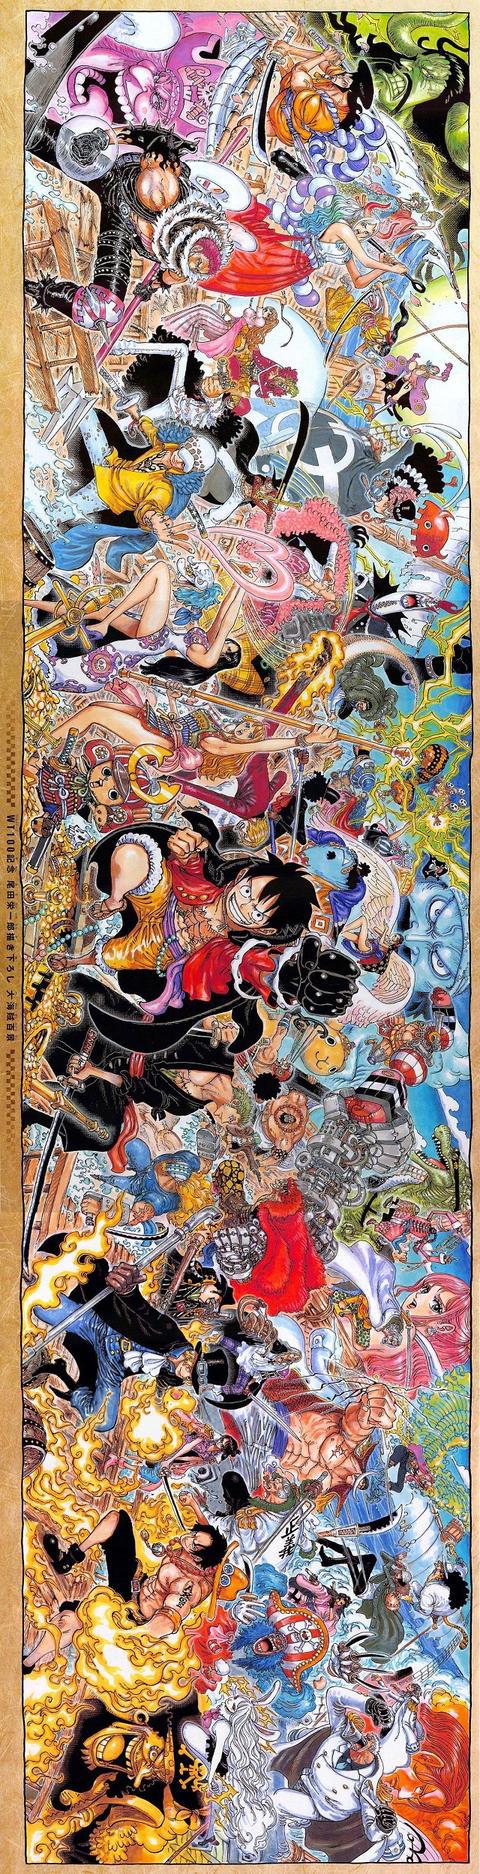 绅士社尾田荣一郎绘制「海贼王」100卷纪念巨幅海报公开